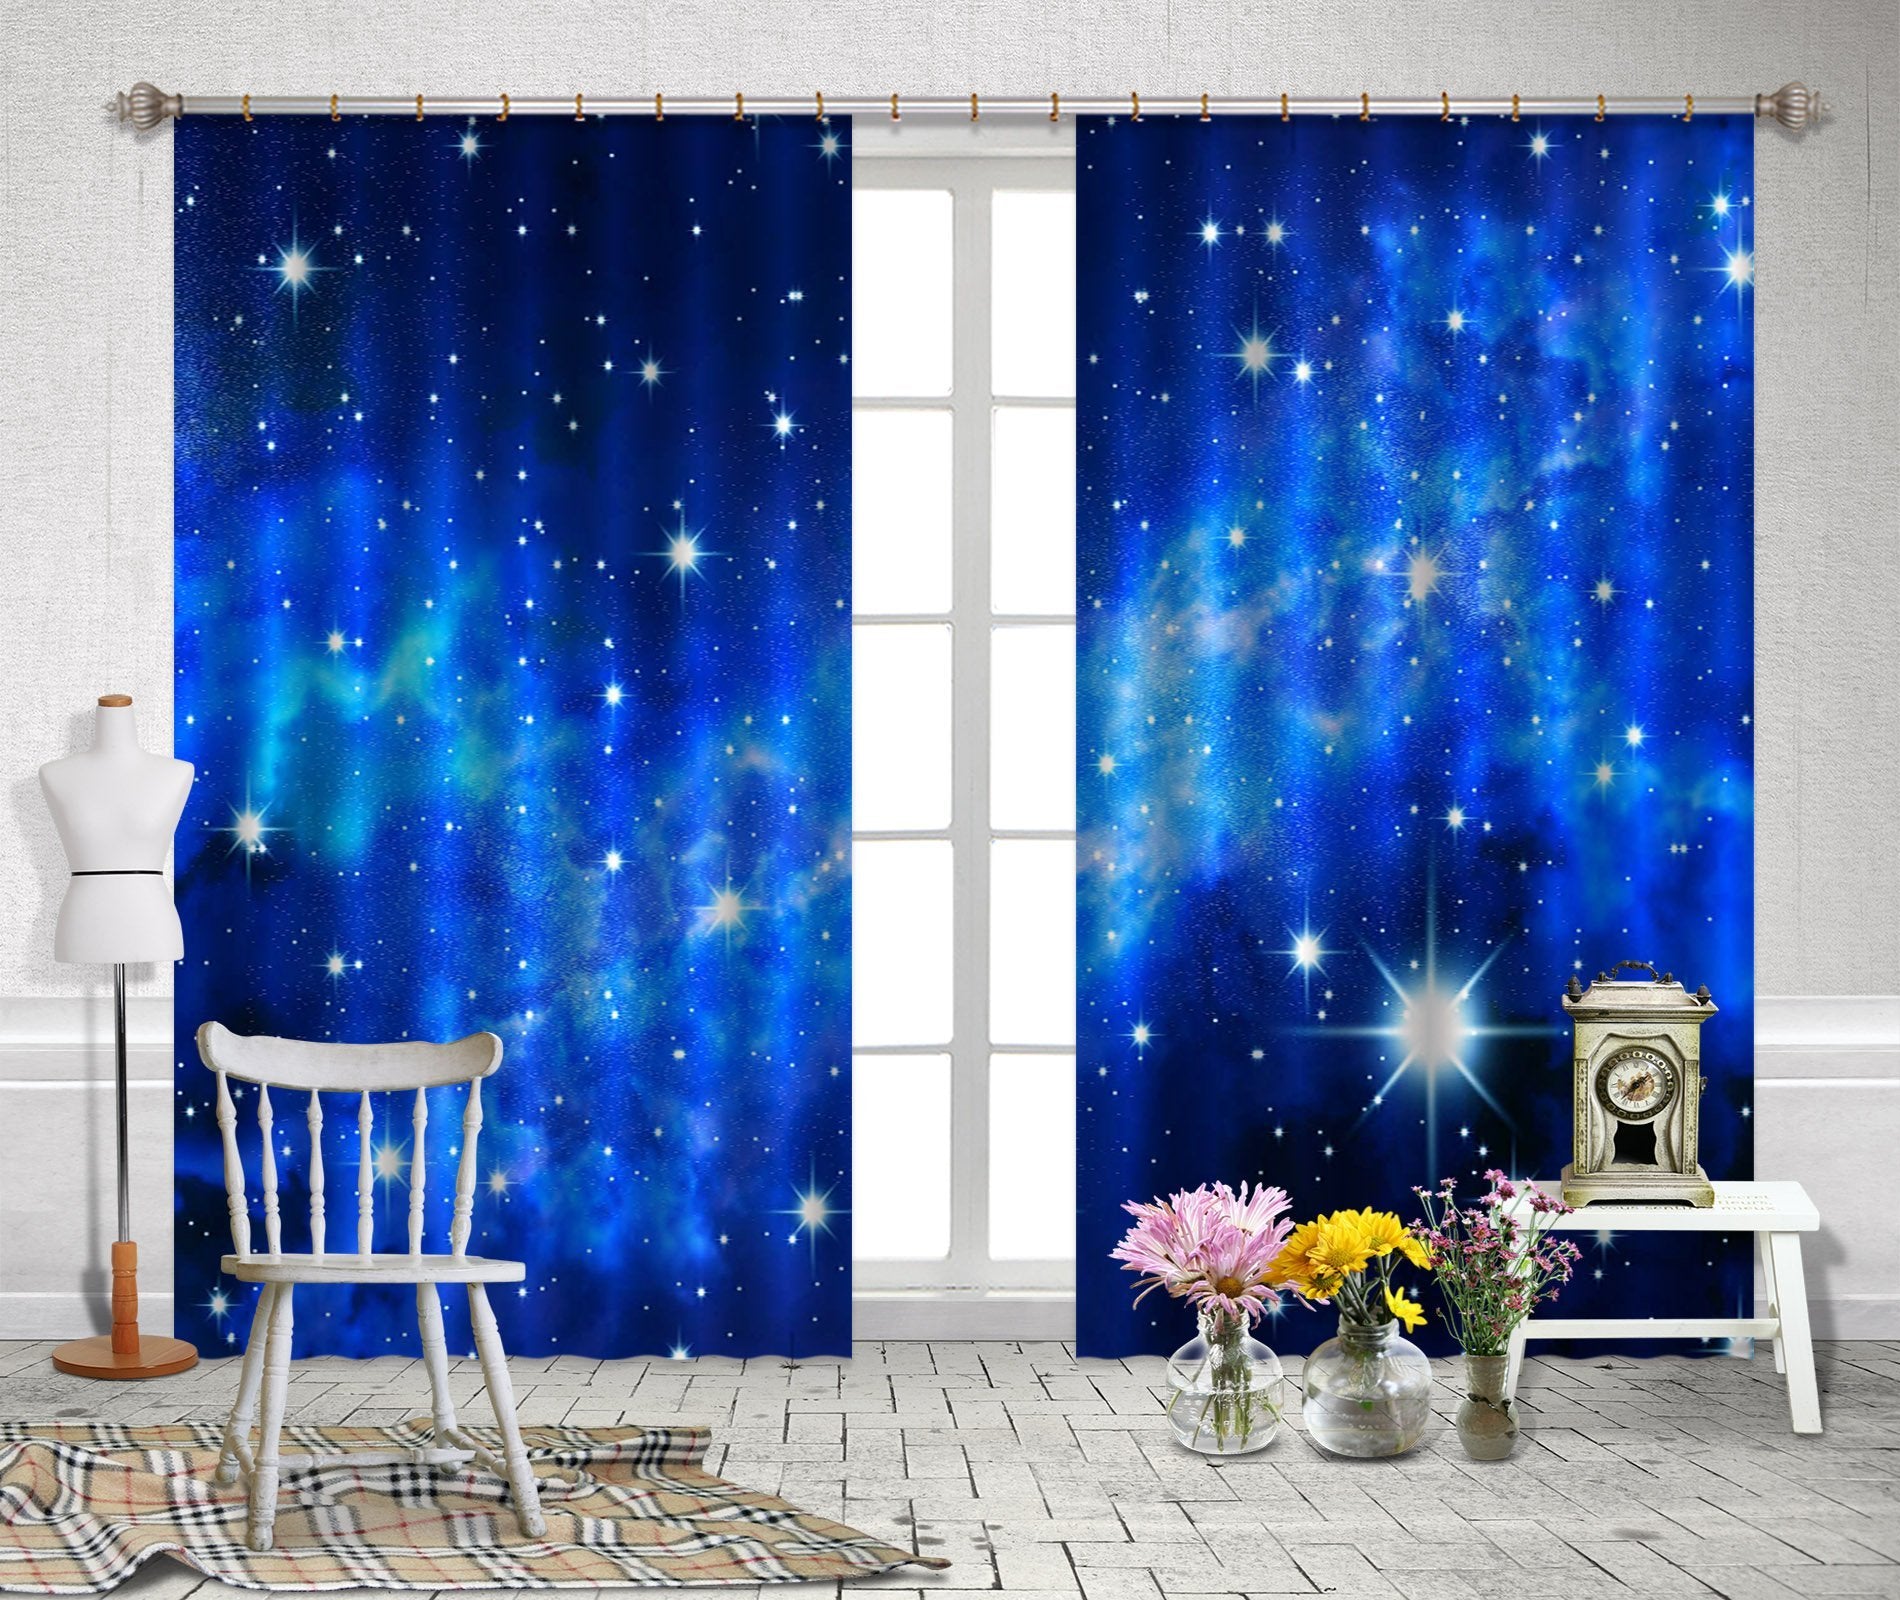 3D Blue Sky Shiny Stars 2231 Curtains Drapes Wallpaper AJ Wallpaper 